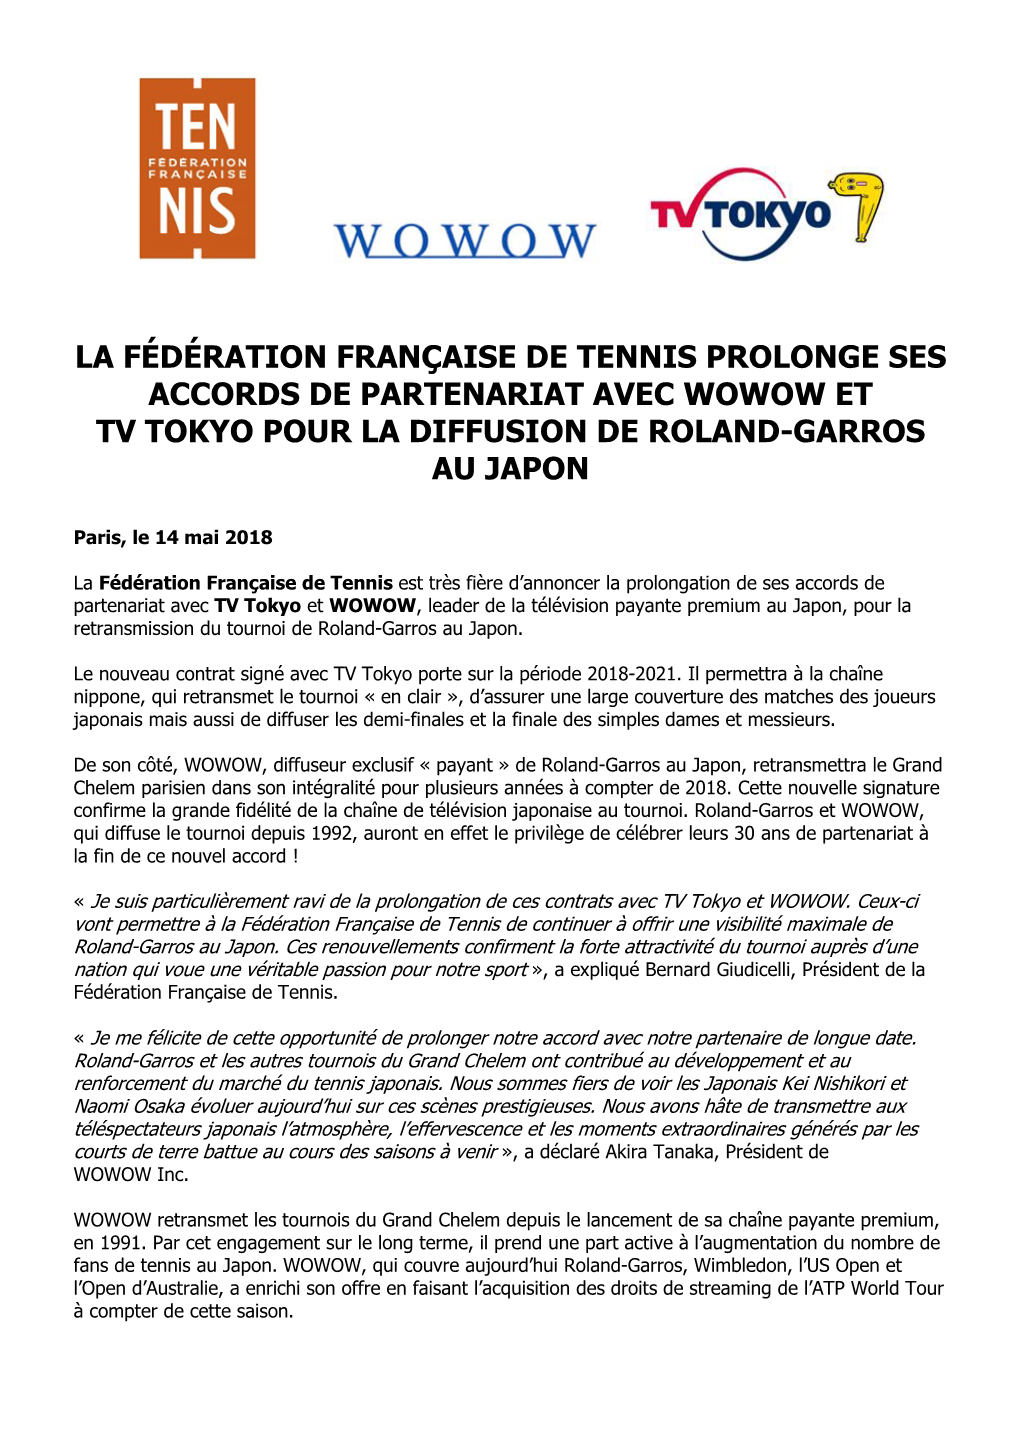 La Fédération Française De Tennis Prolonge Ses Accords De Partenariat Avec Wowow Et Tv Tokyo Pour La Diffusion De Roland-Garros Au Japon